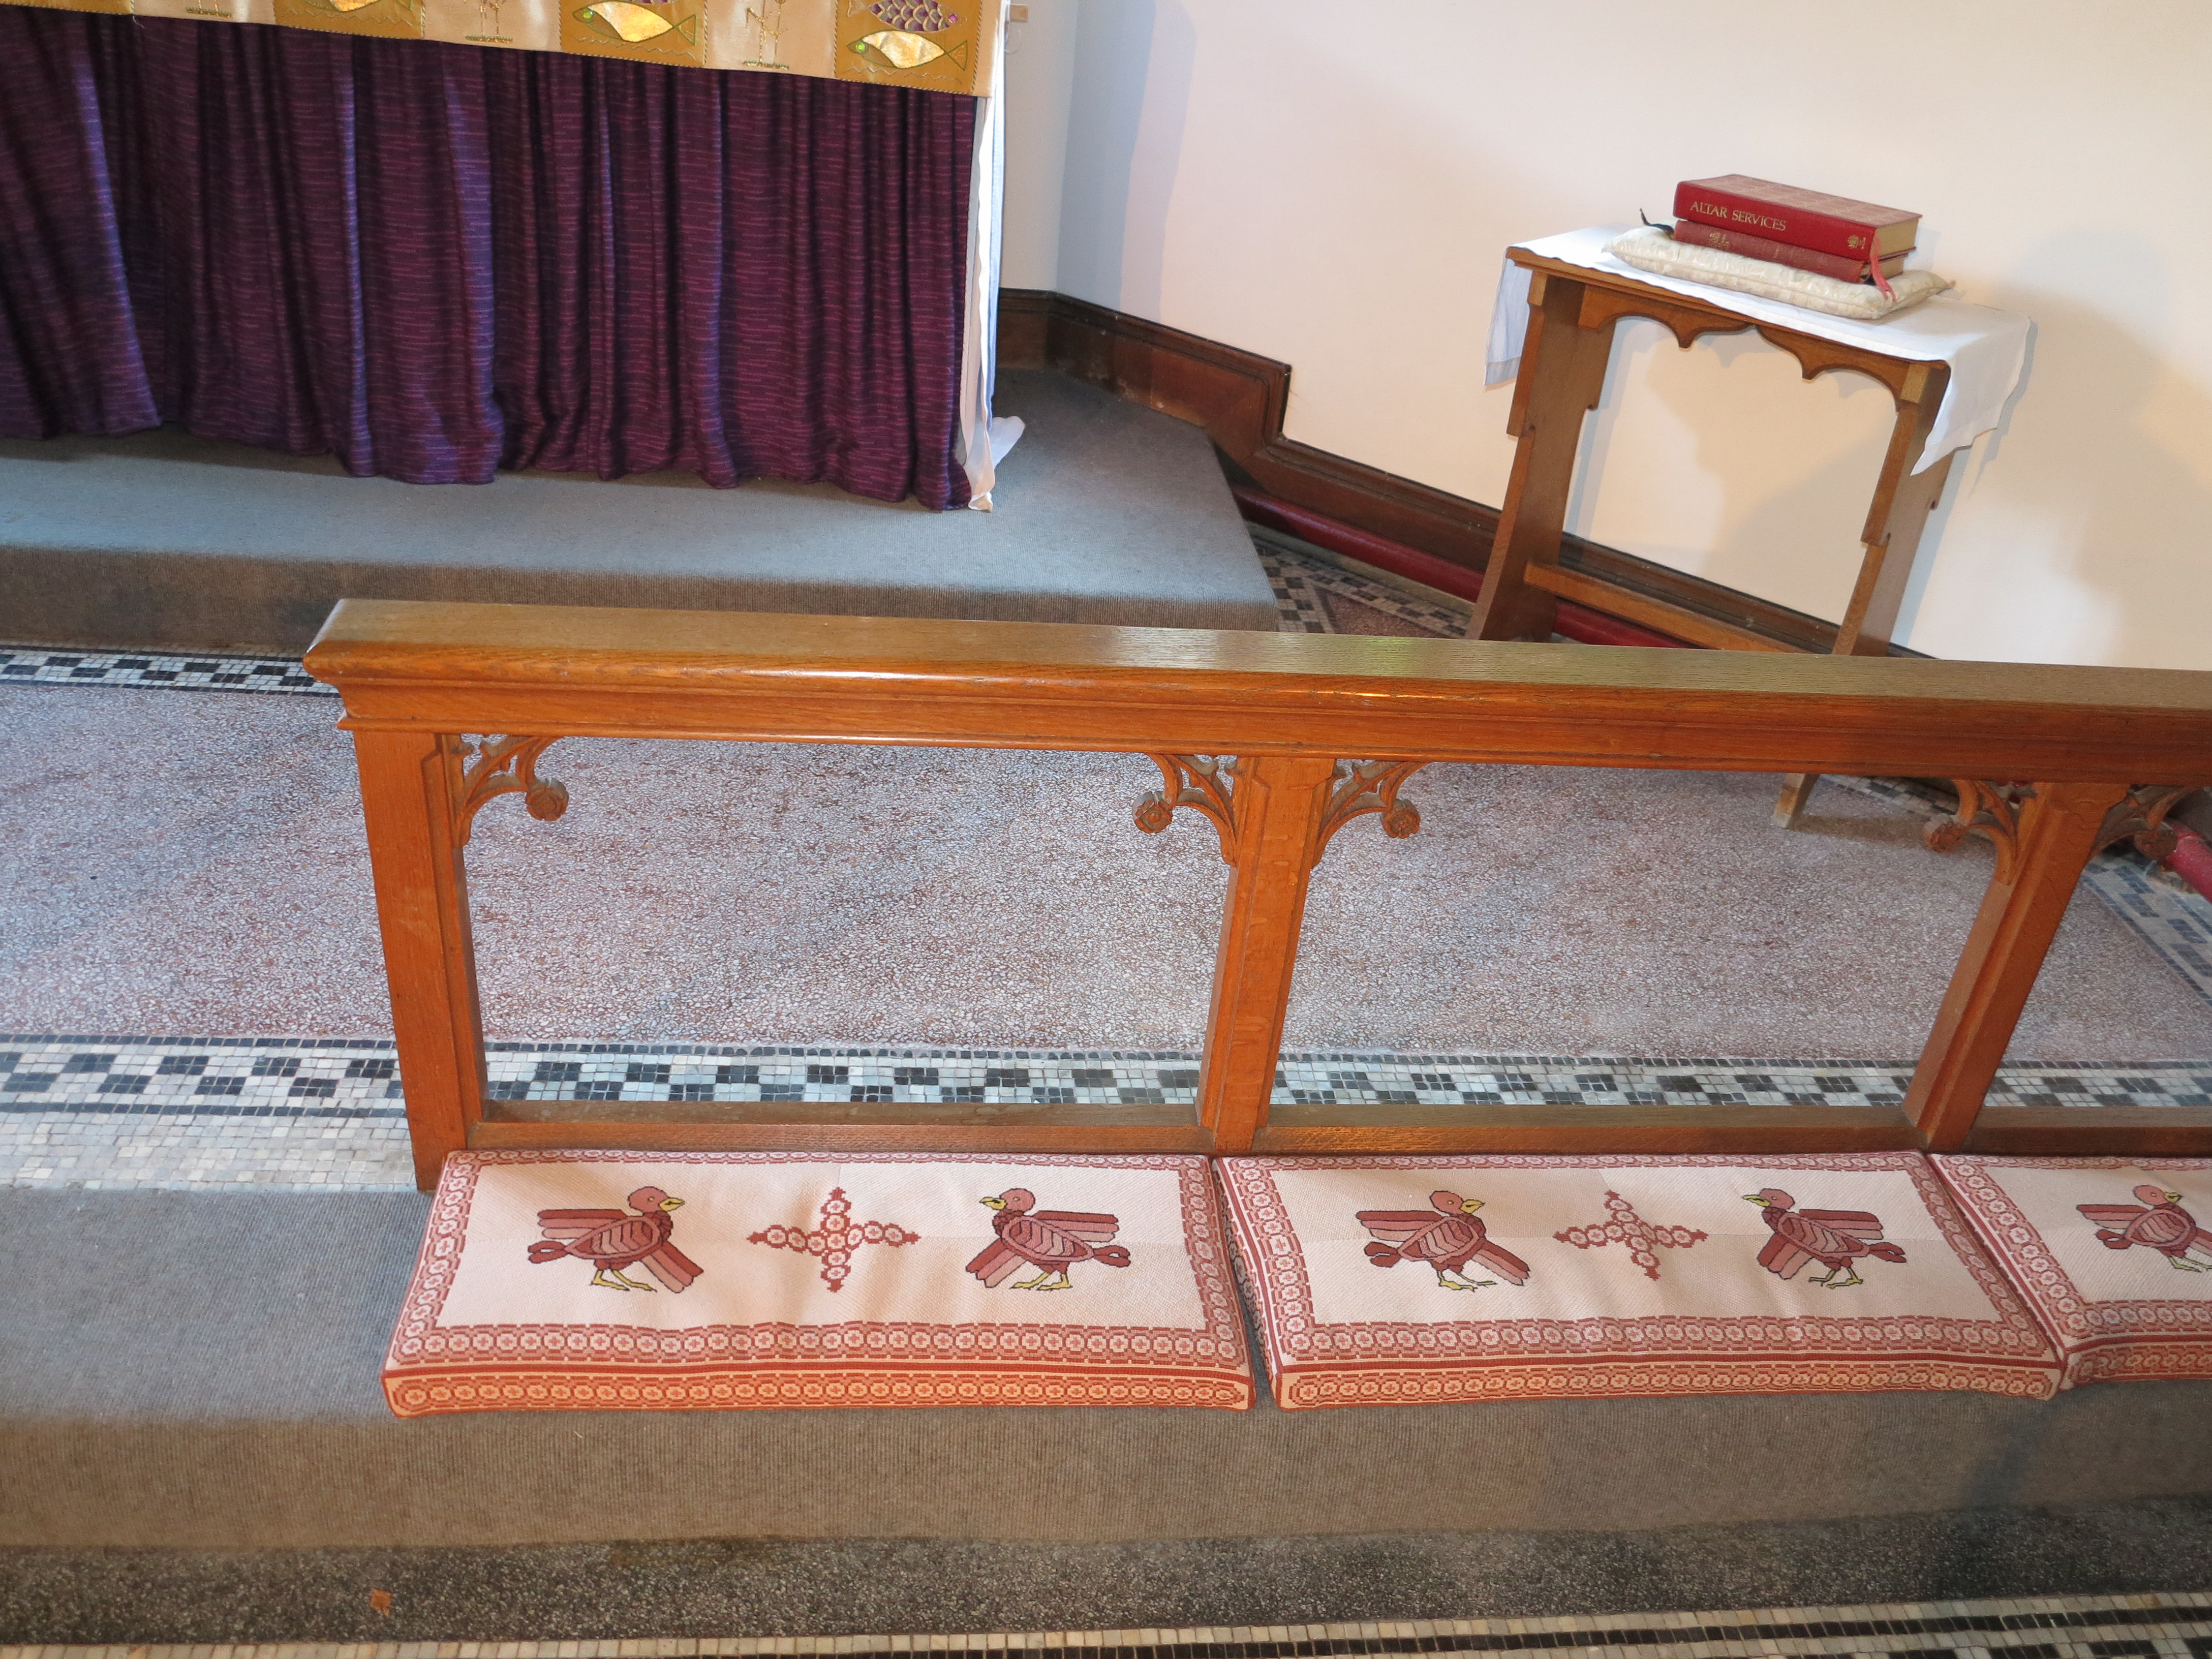 St. Johns altar rail